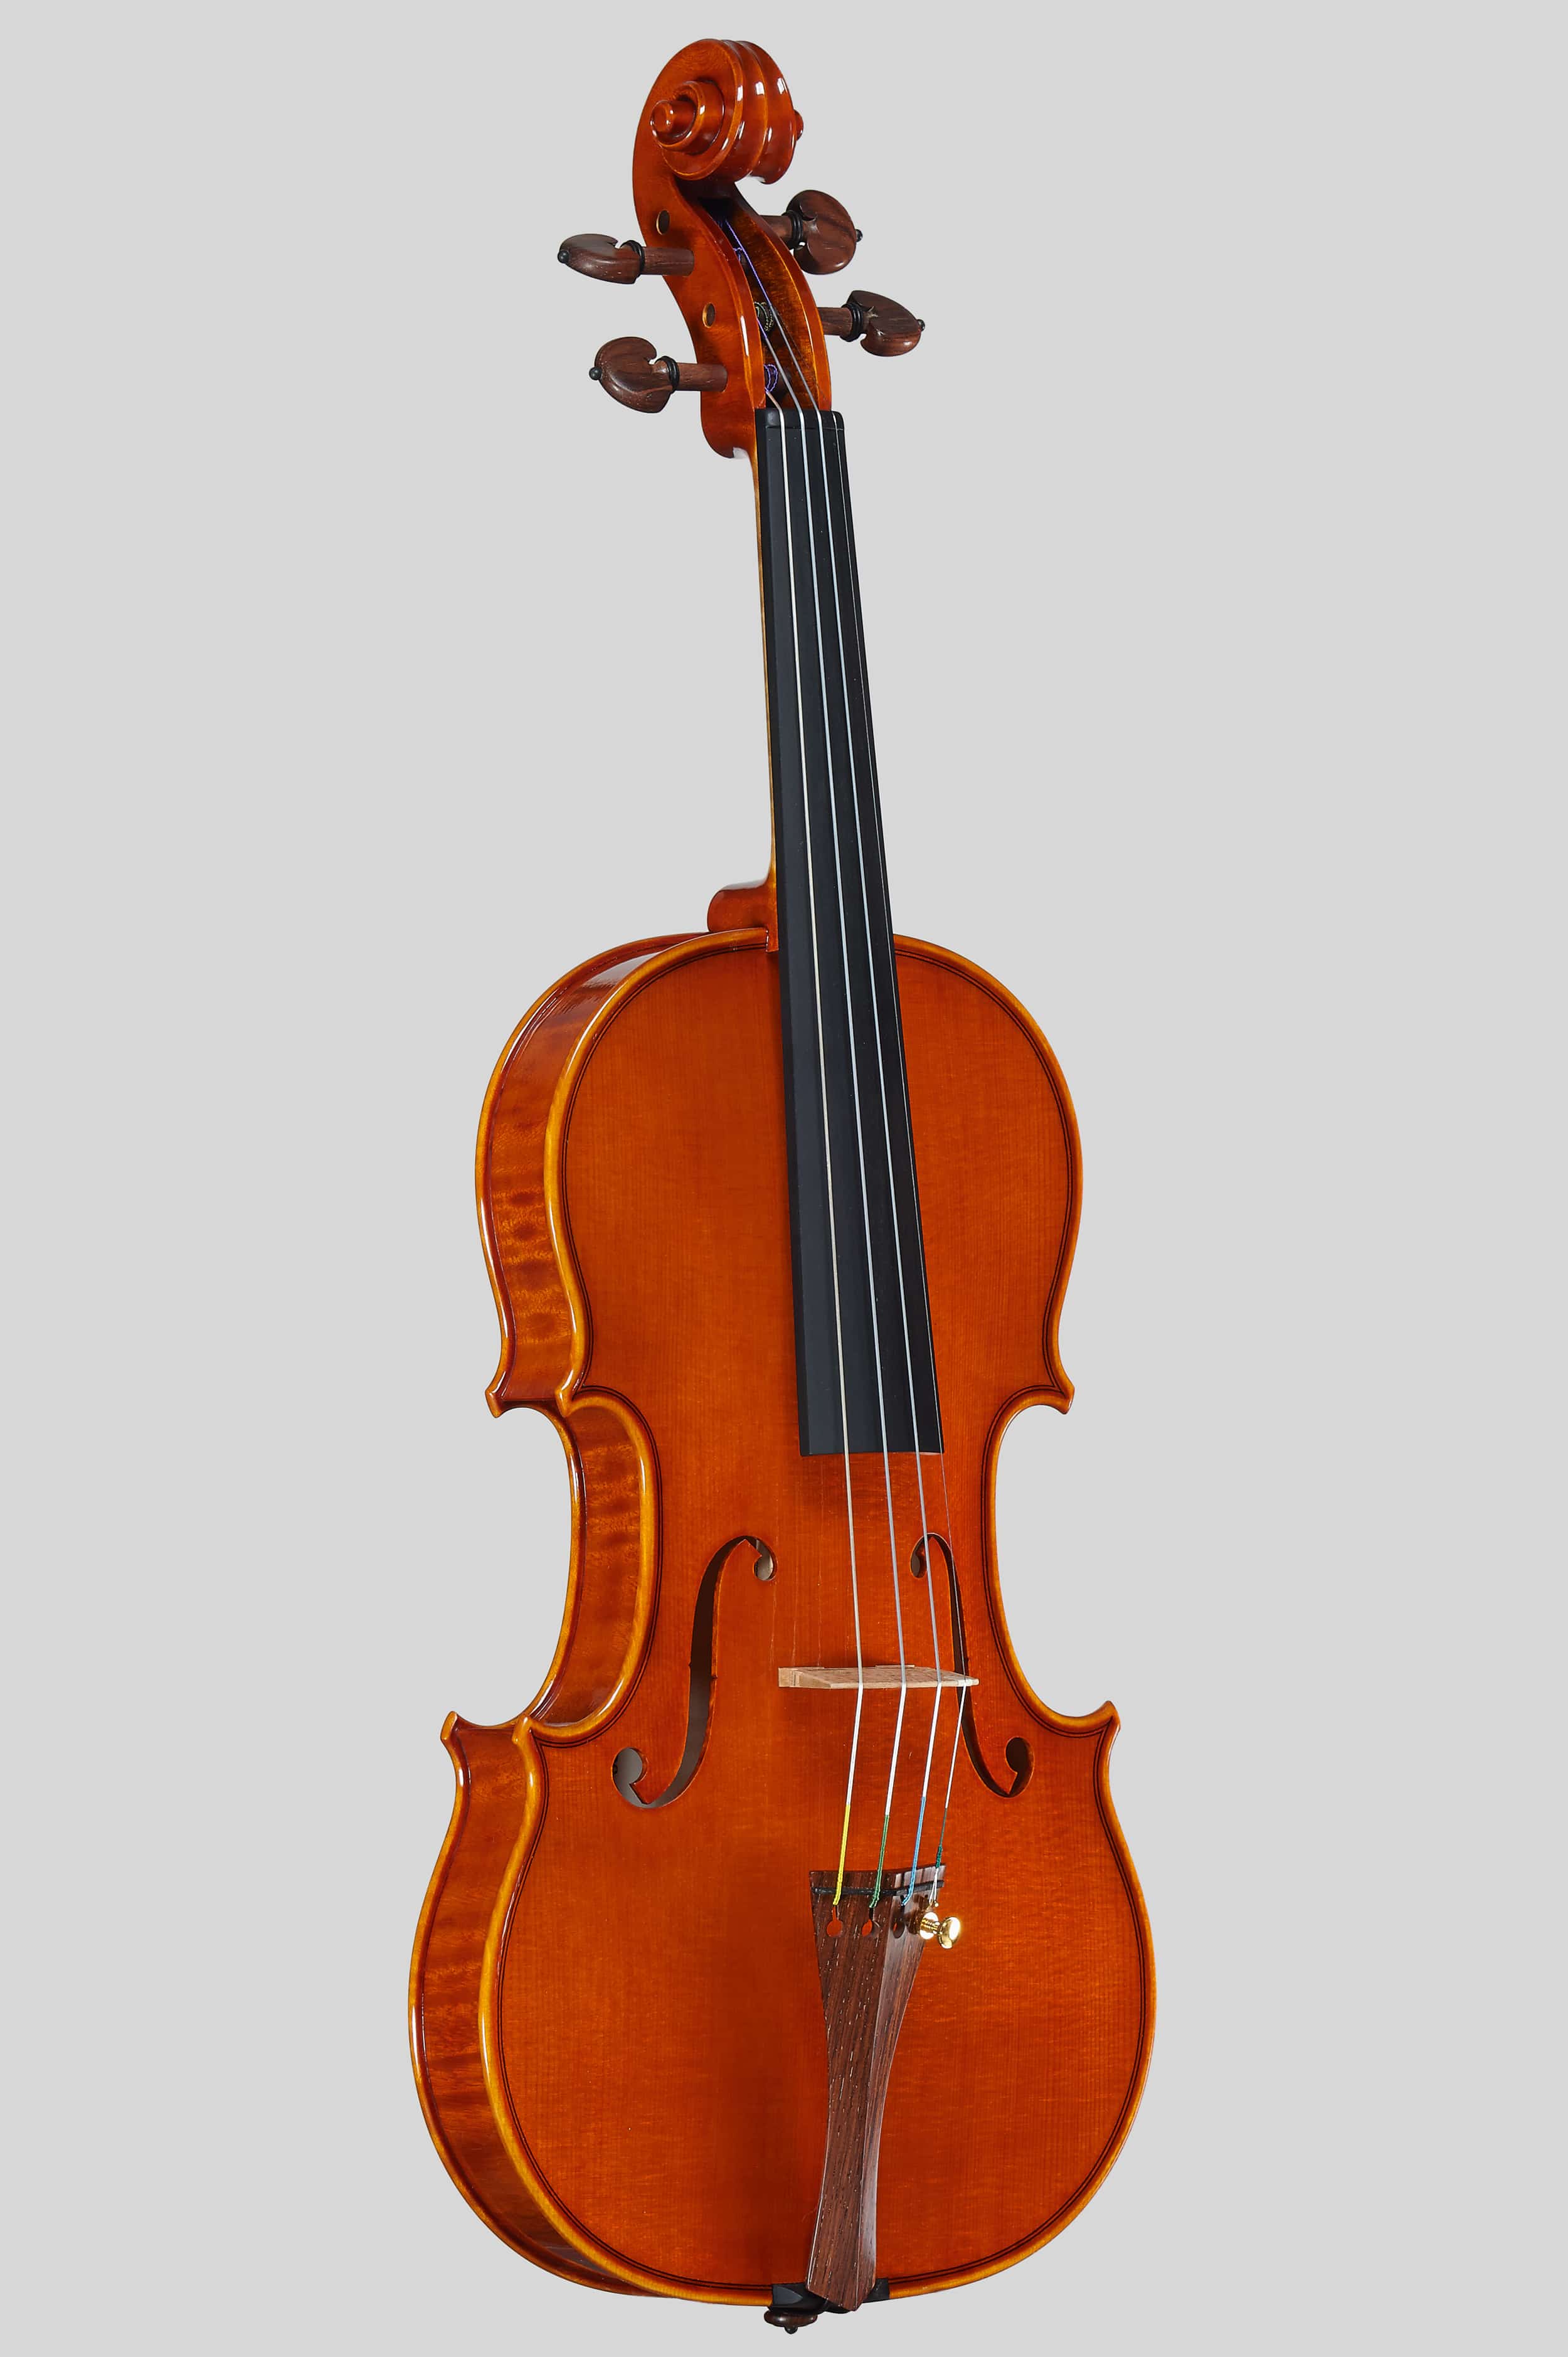 Anno 2014 – Violino modello stile A. Stradivari “Soil” 1714 - Intero